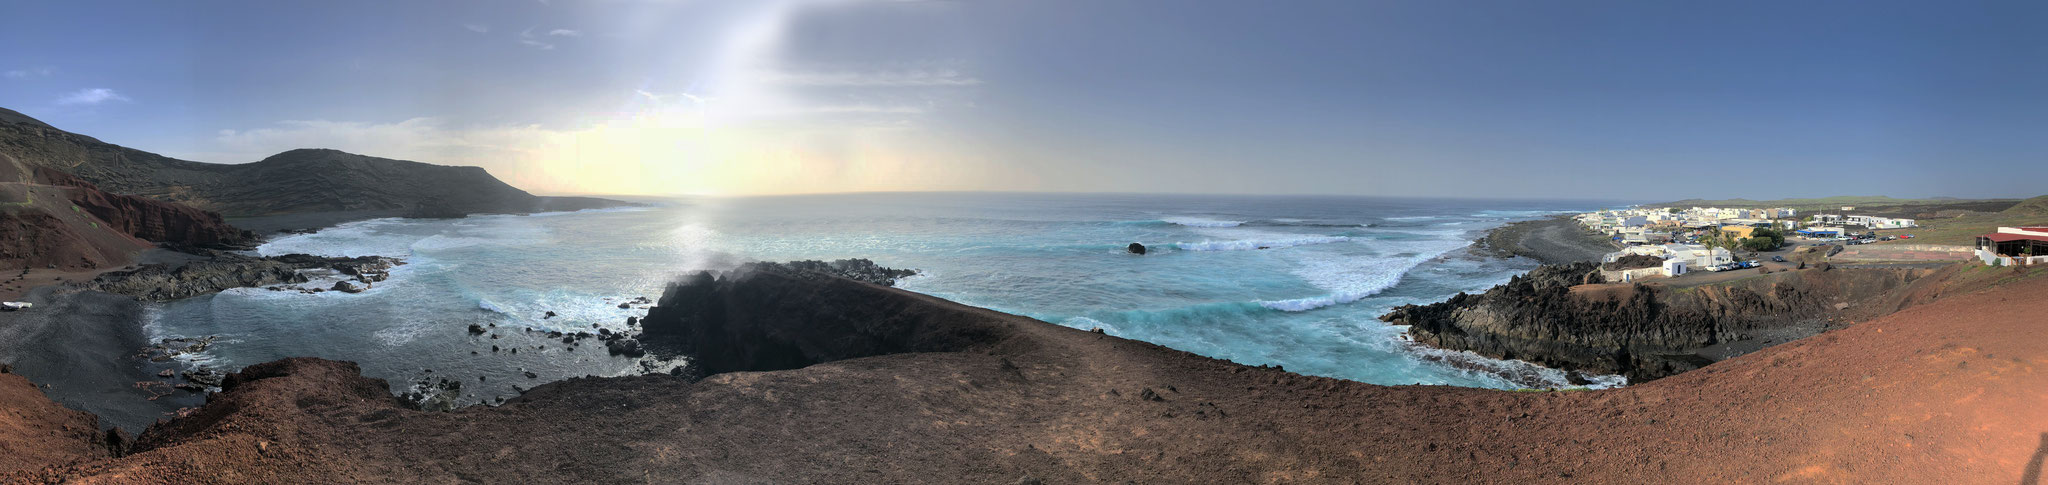 El Golfo, Lanzarote, Spain (December 2018) 